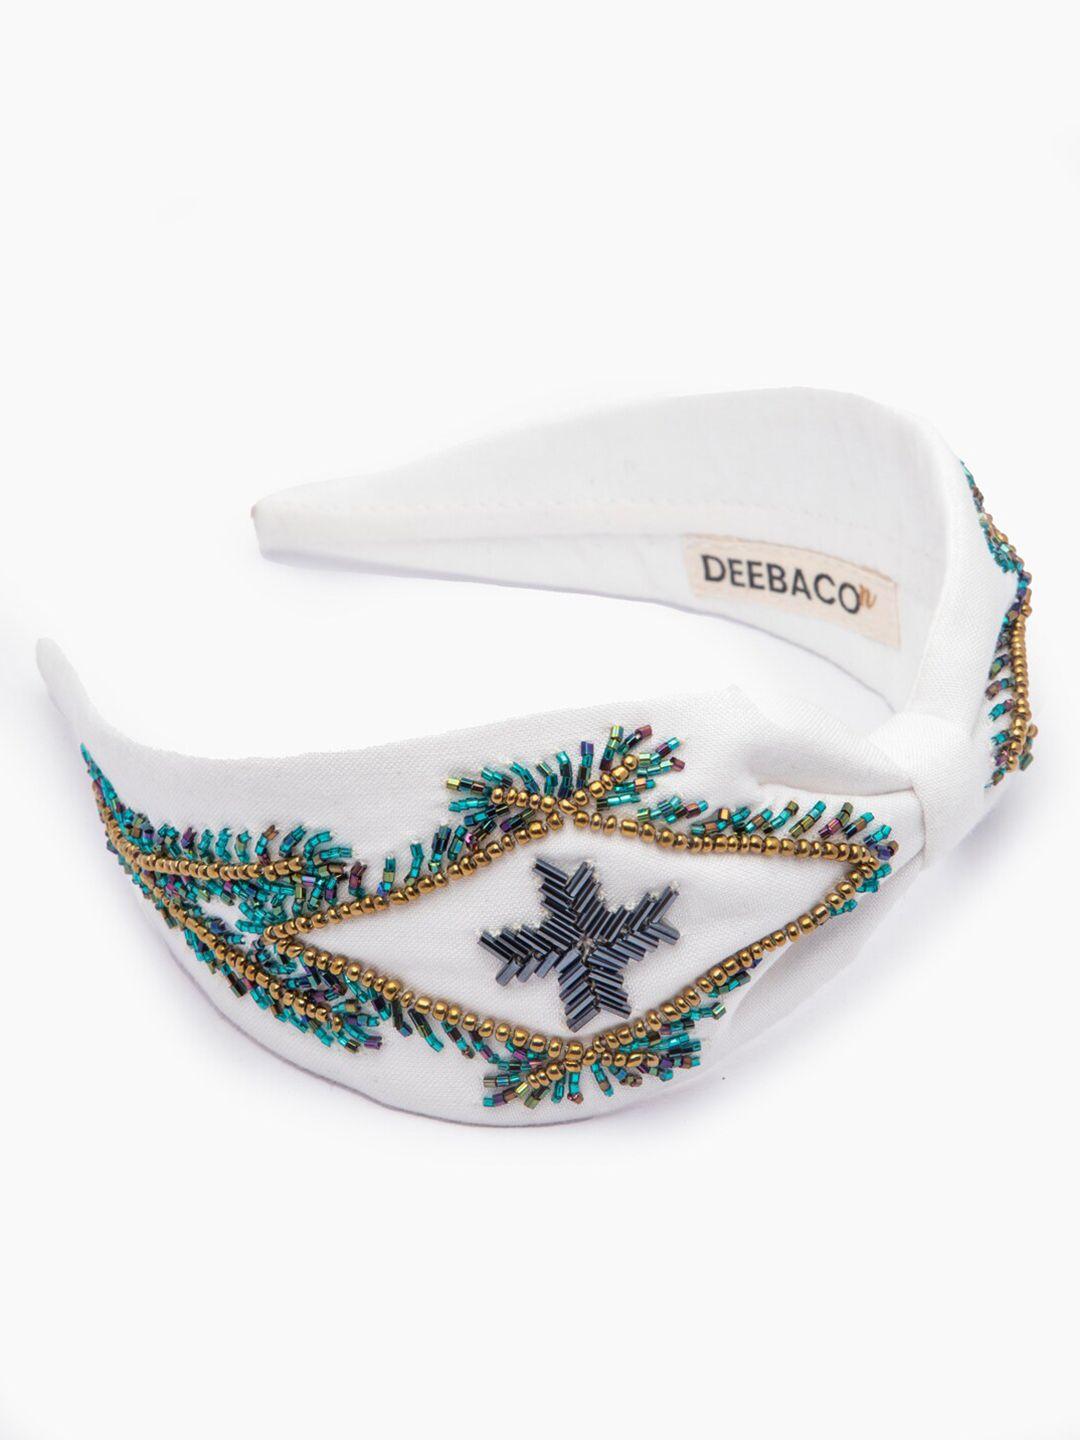 deebaco girls white embellished bow shaped hairband